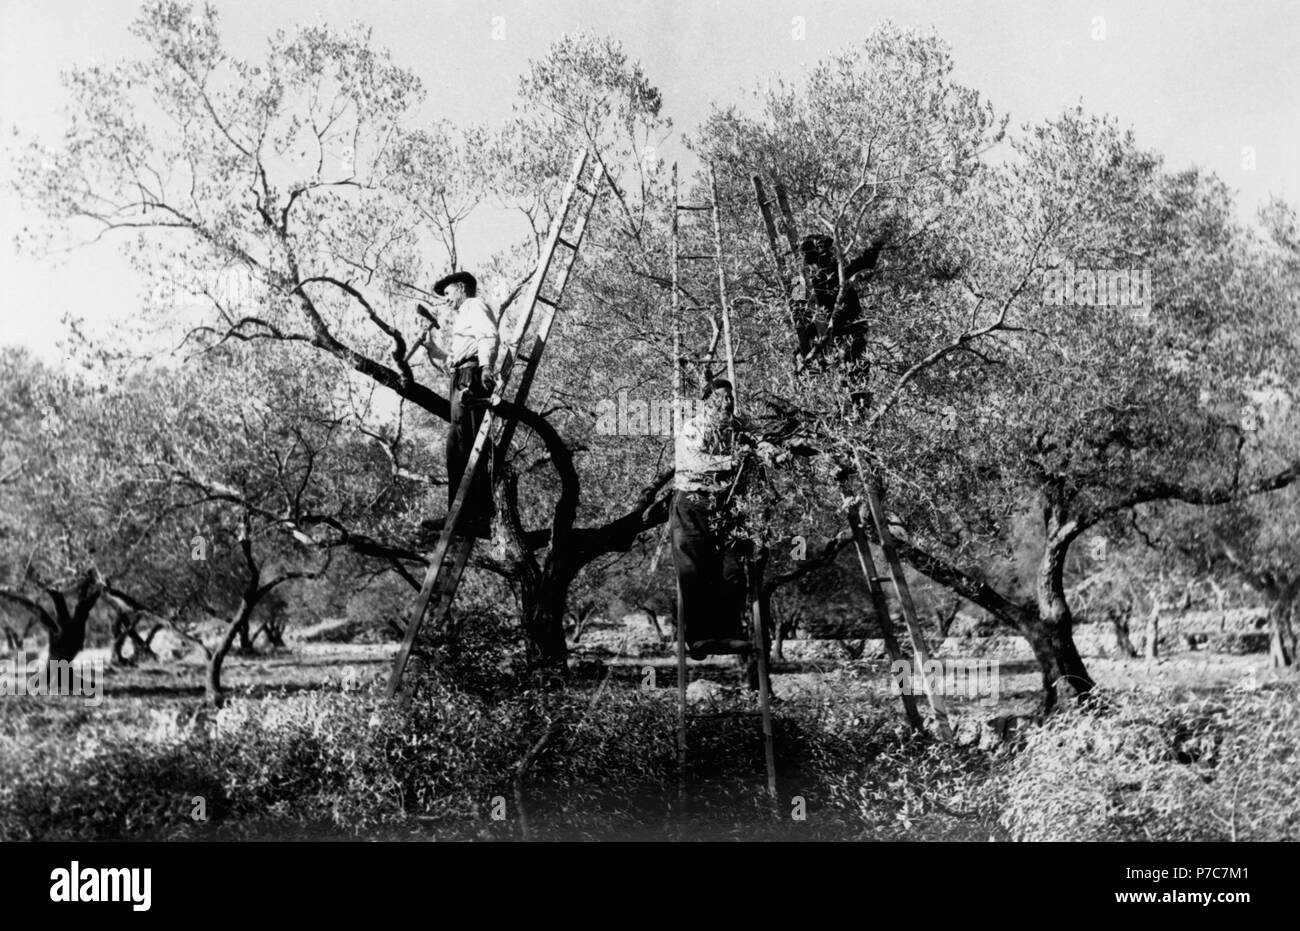 Catalunya. Campesinos encaramados a una escalera podando los olivos en la zona de Las Garrigas. Año 1970. Stock Photo